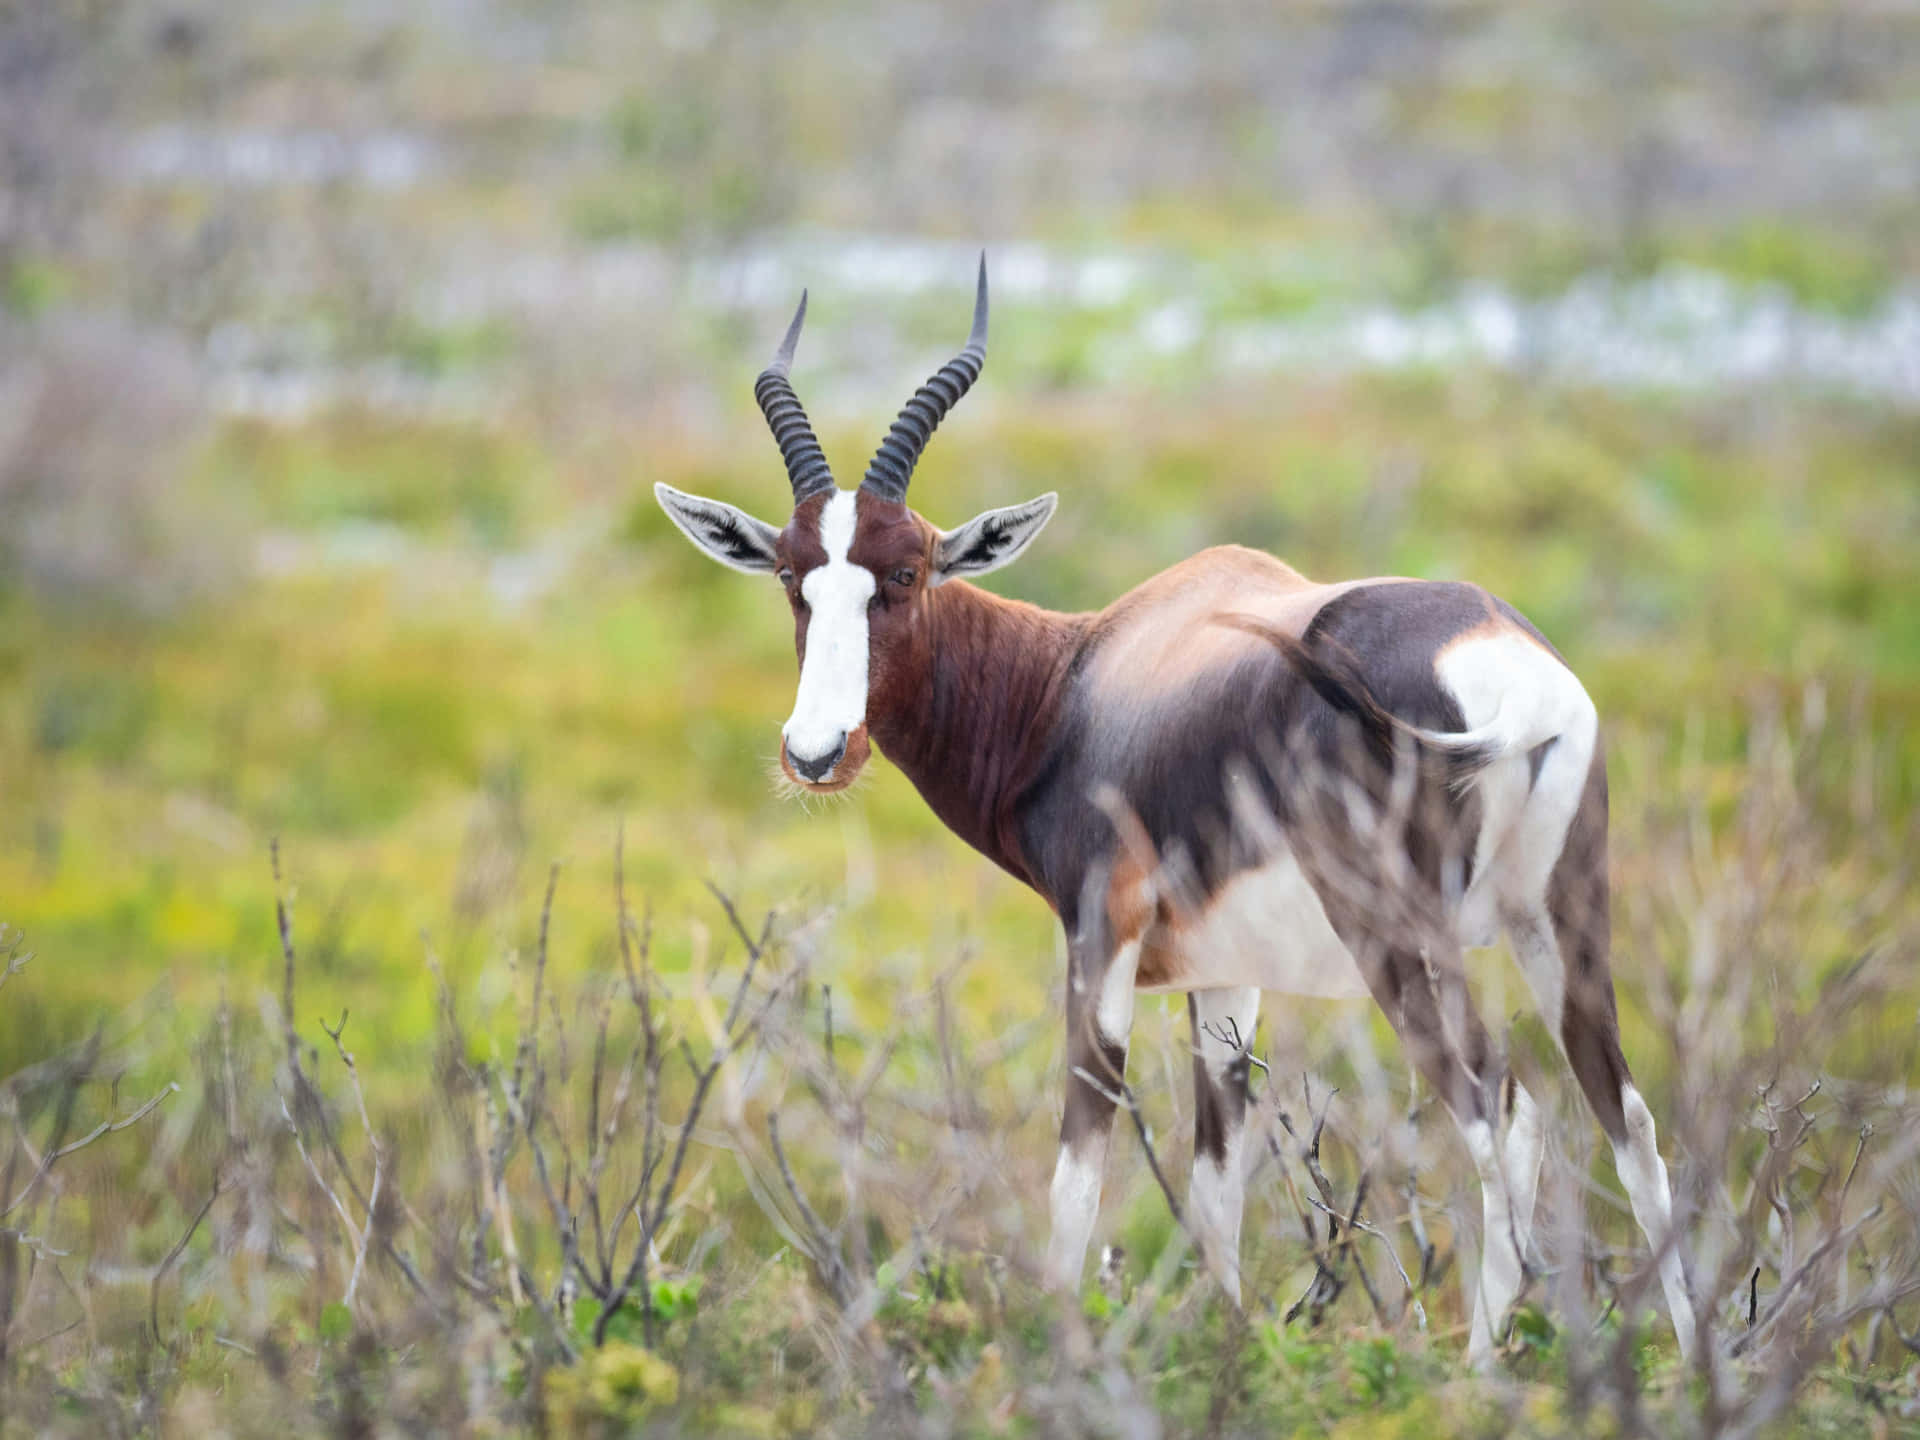 Bontebok Antelopein Grassland.jpg Wallpaper